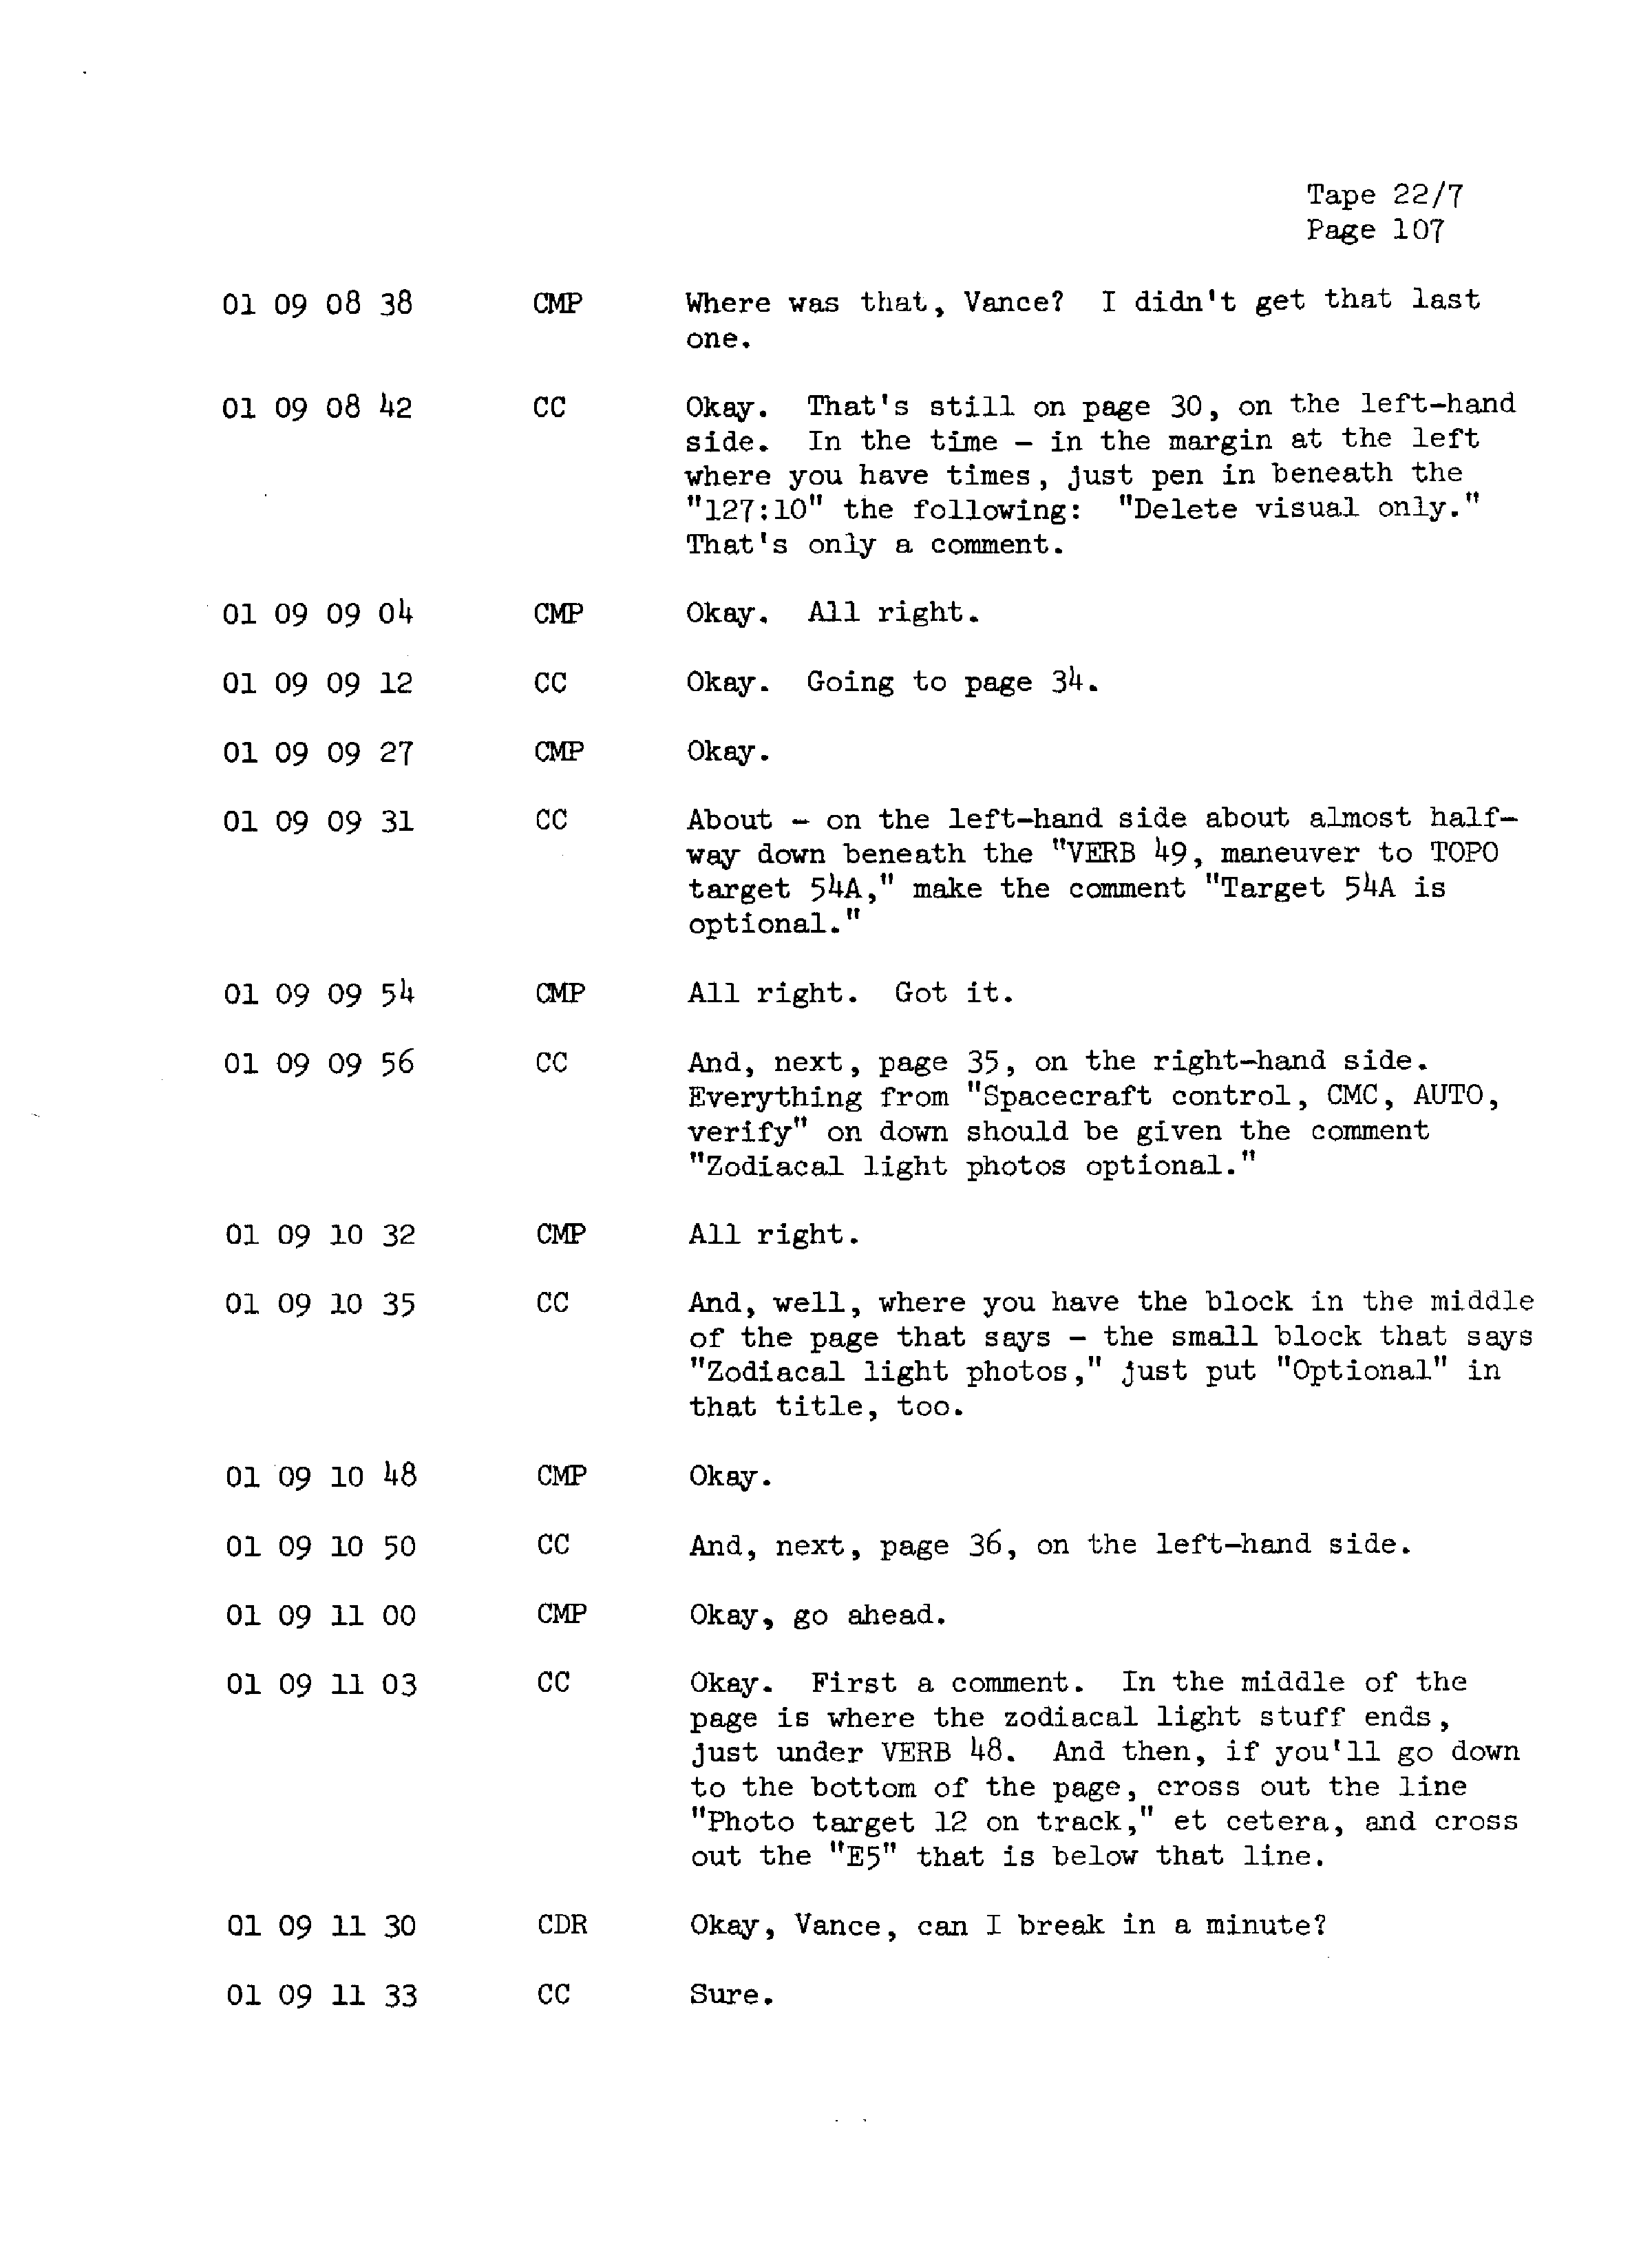 Page 114 of Apollo 13’s original transcript